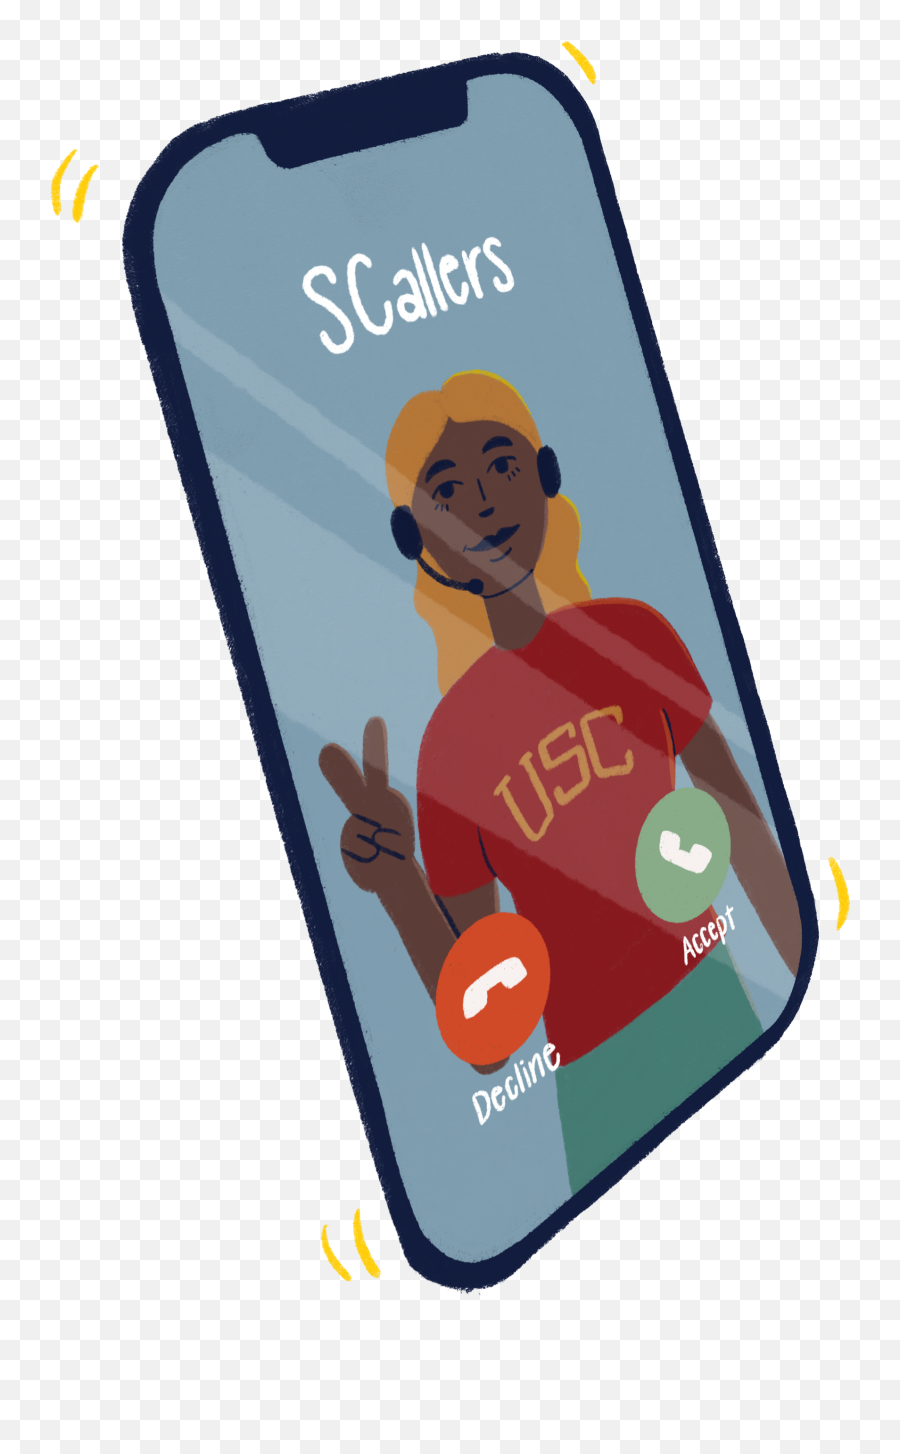 One Year - Smartphone Emoji,Emoji Jared Silicon Valley